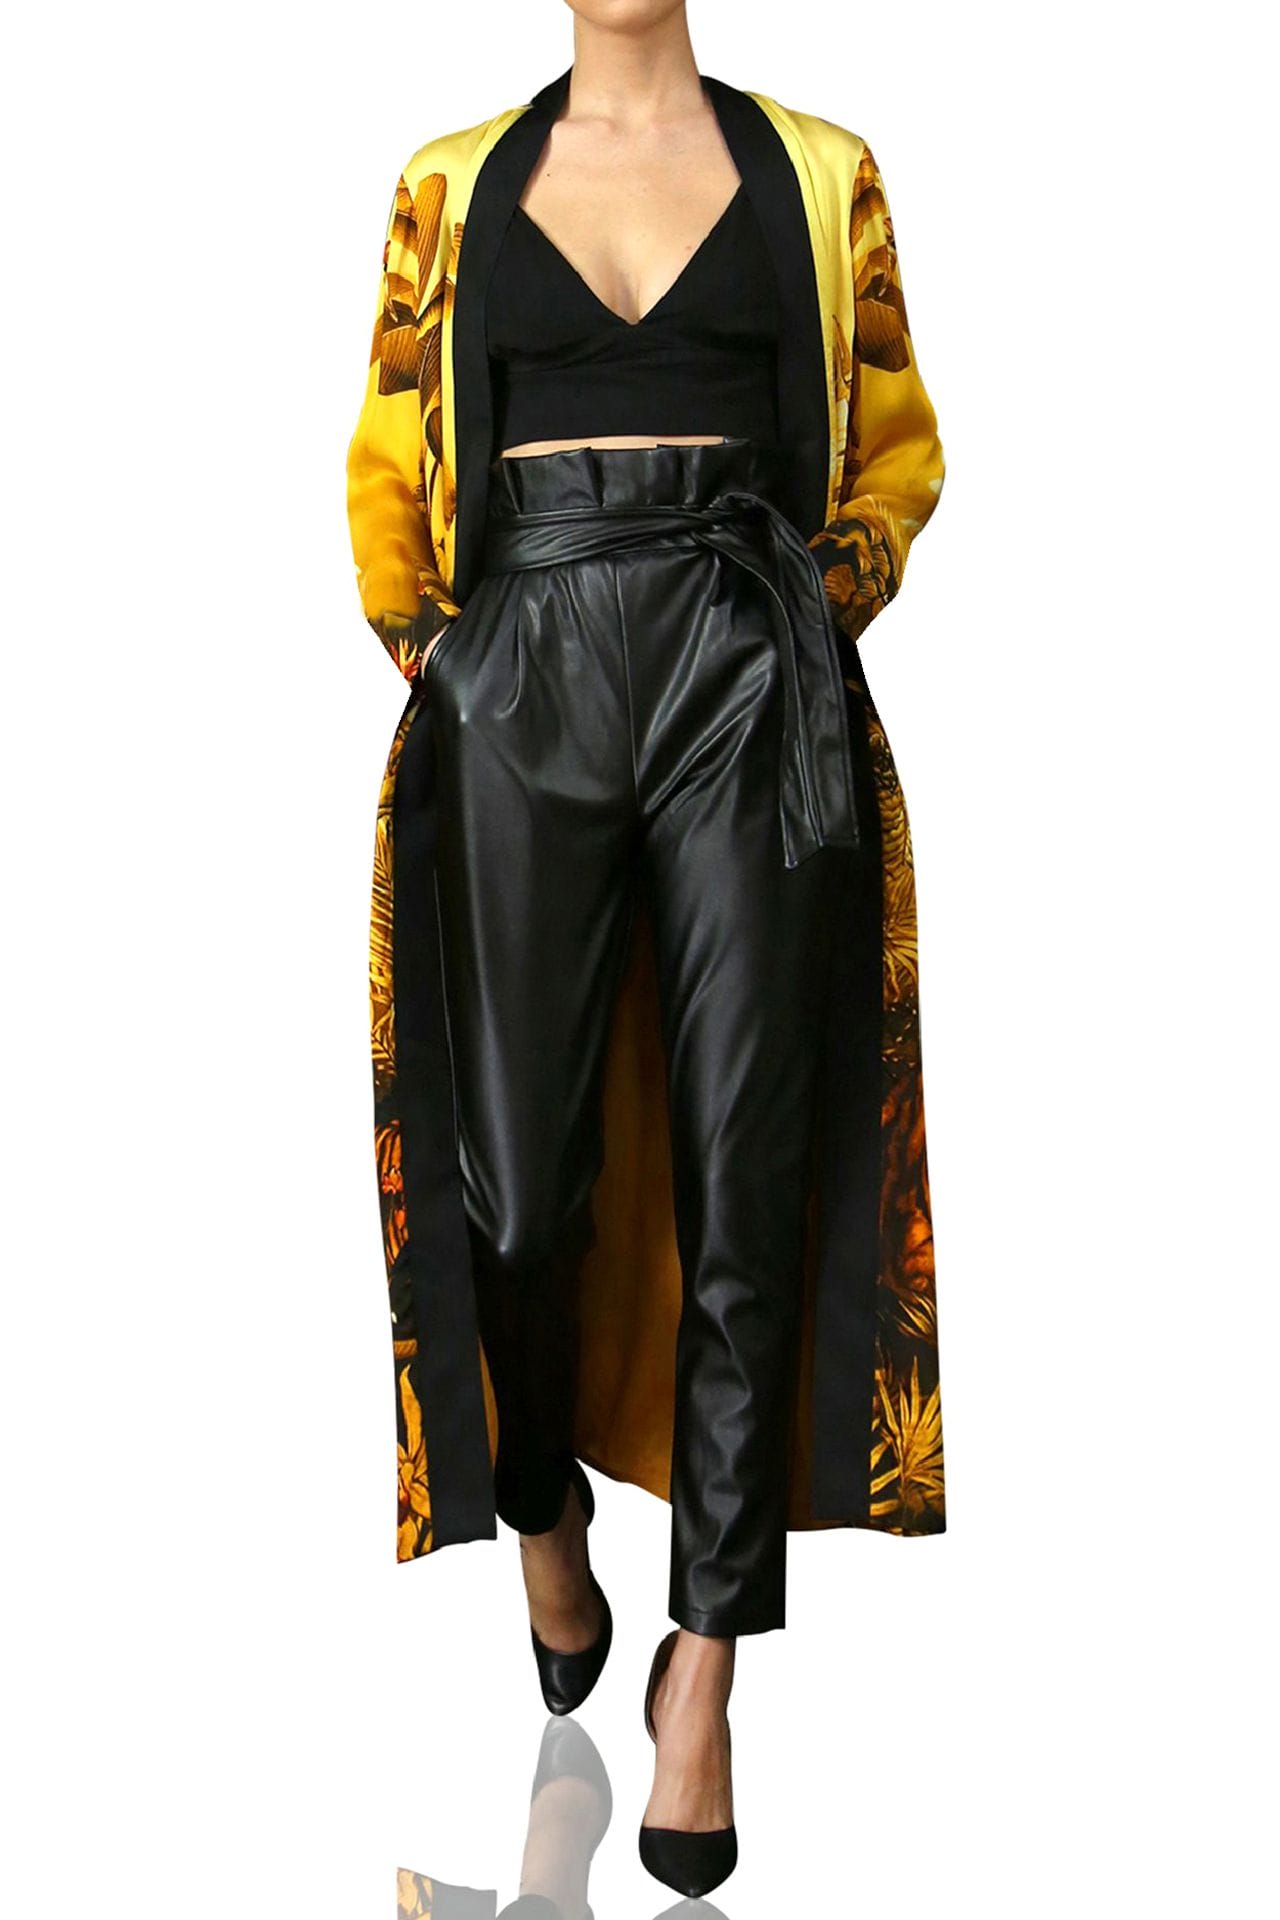 "Kyle X Shahida" "kimono silk robe women's" "womens long kimono robe" "silk kimono robes for women" "silk yellow robe"